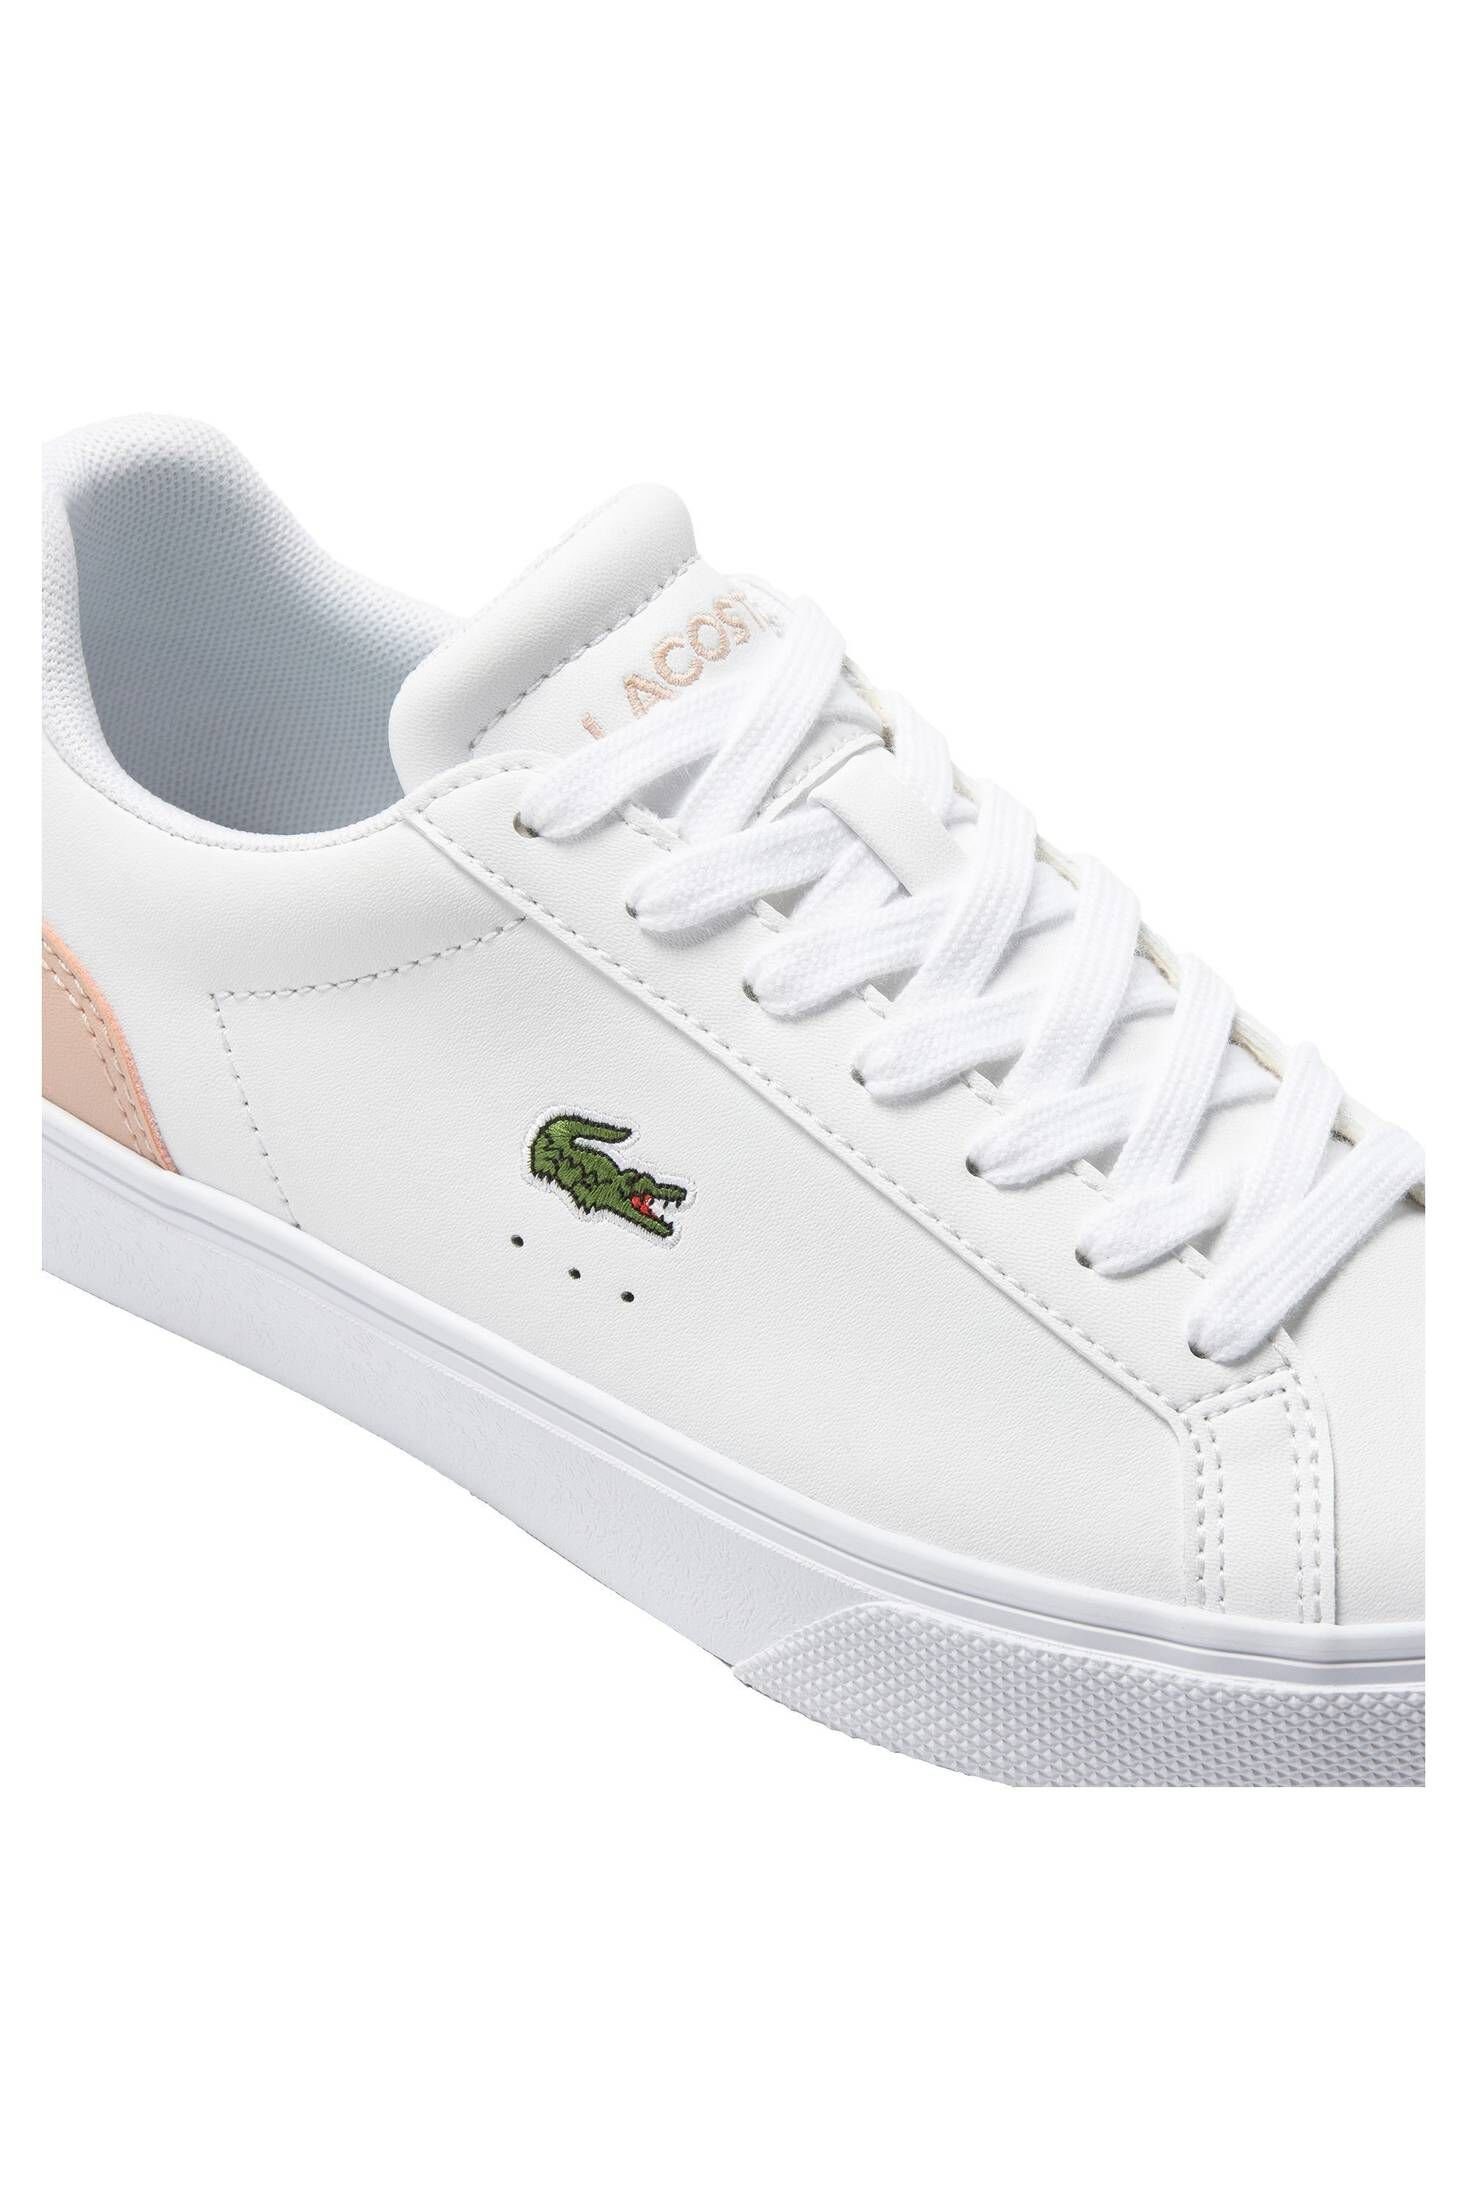 Lacoste Damen Sneaker LEROND weiss/rosa LEATHER Sneaker (982) PRO BASELINE